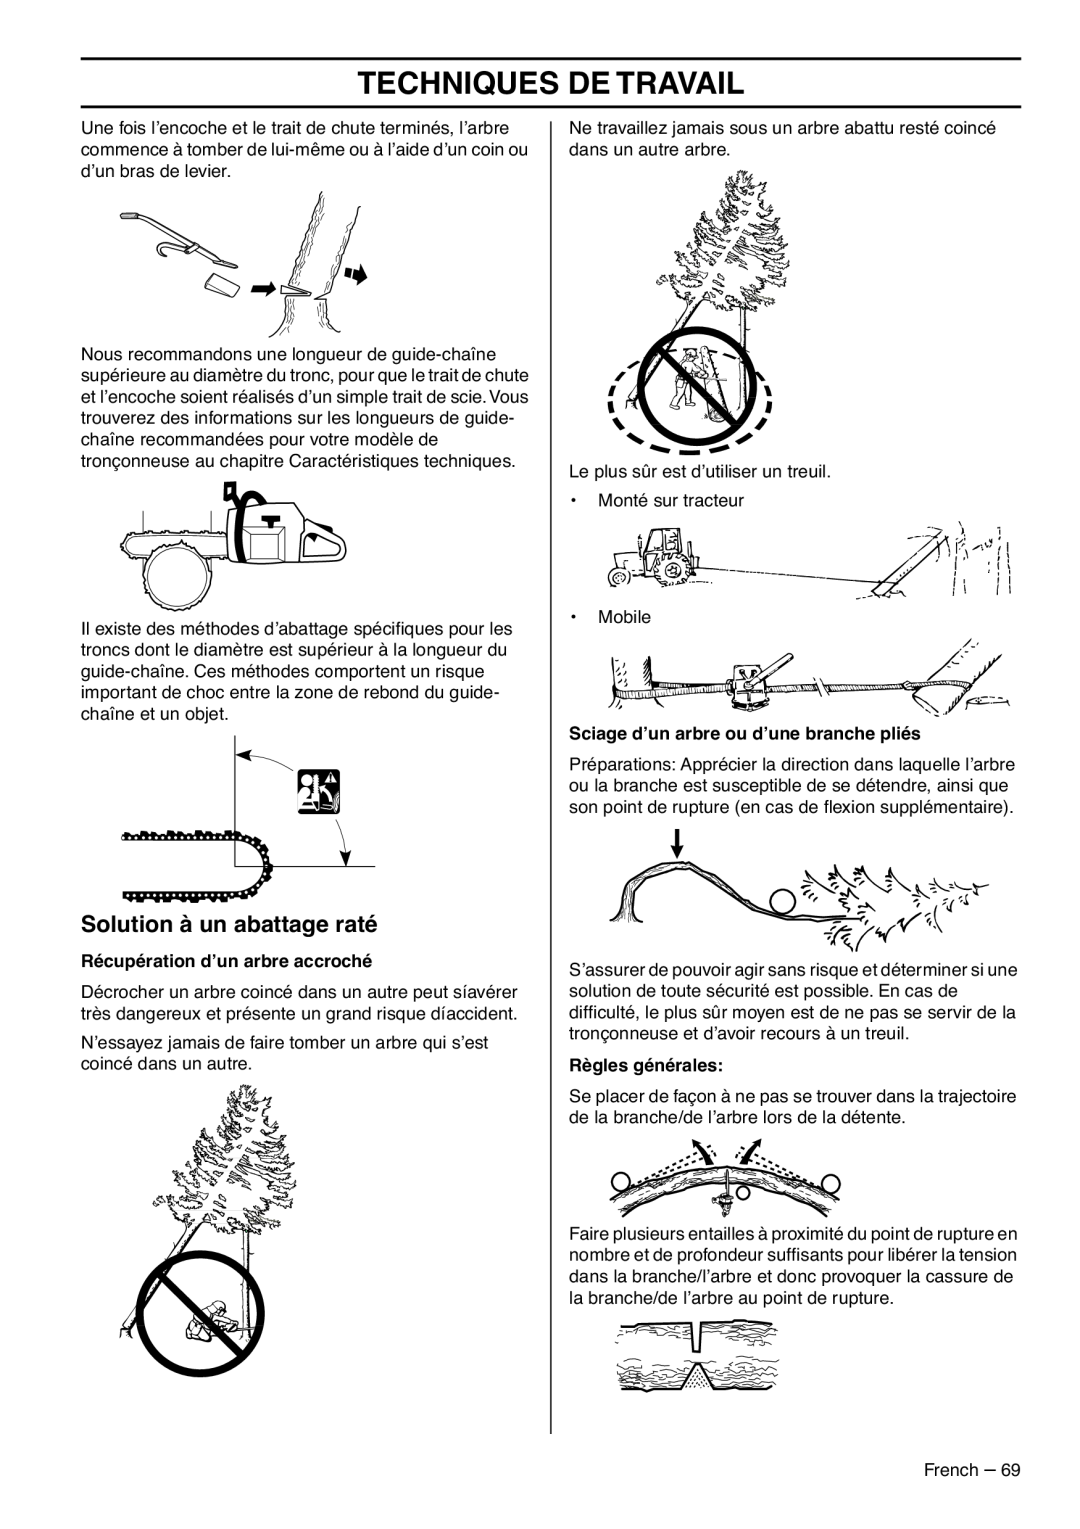 RedMax GZ7000 manual Solution à un abattage raté, Techniques De Travail, Récupération d’un arbre accroché, Règles générales 